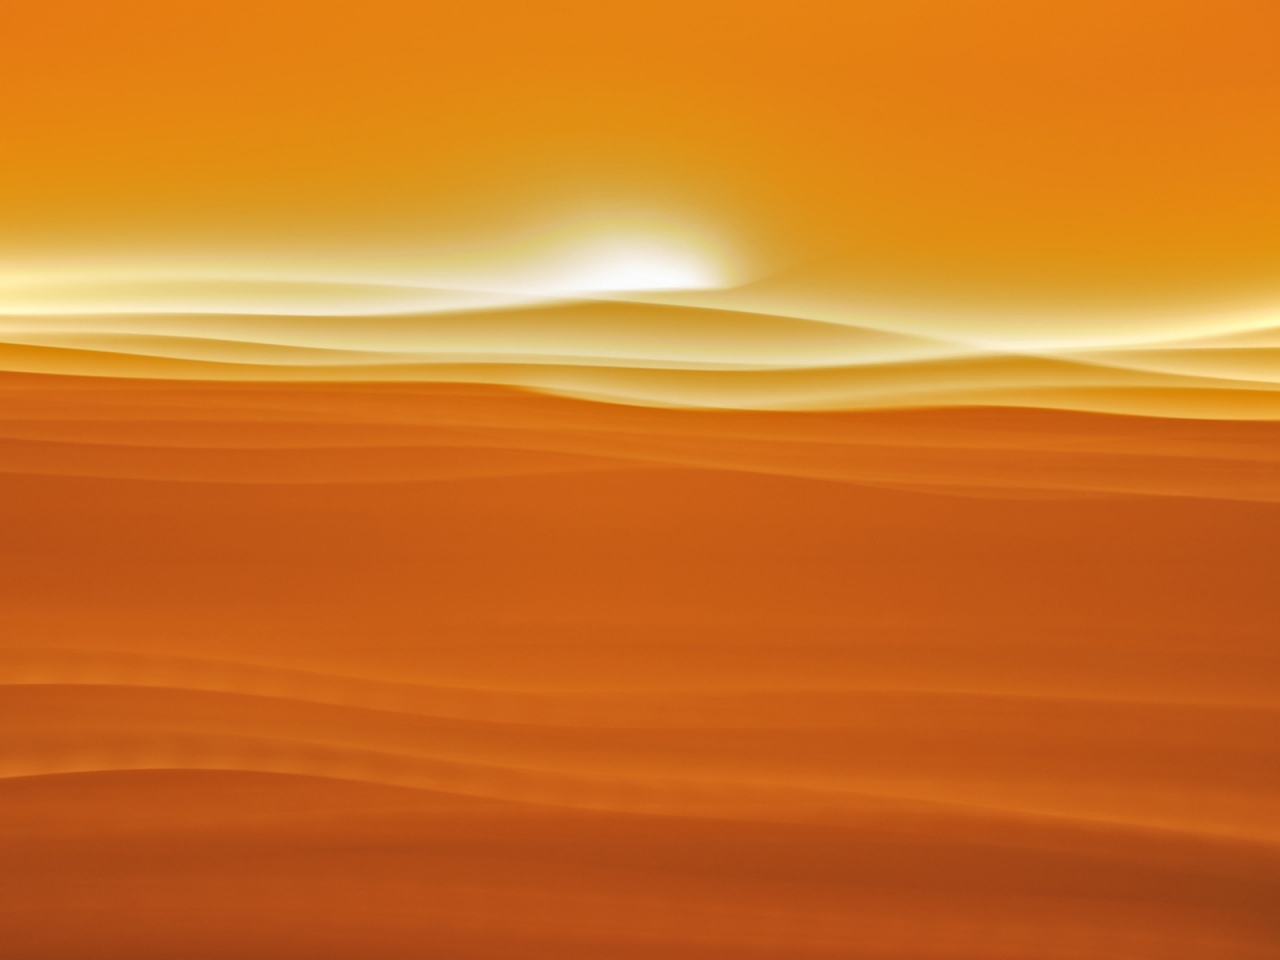 Desert sunlight for 1280 x 960 resolution